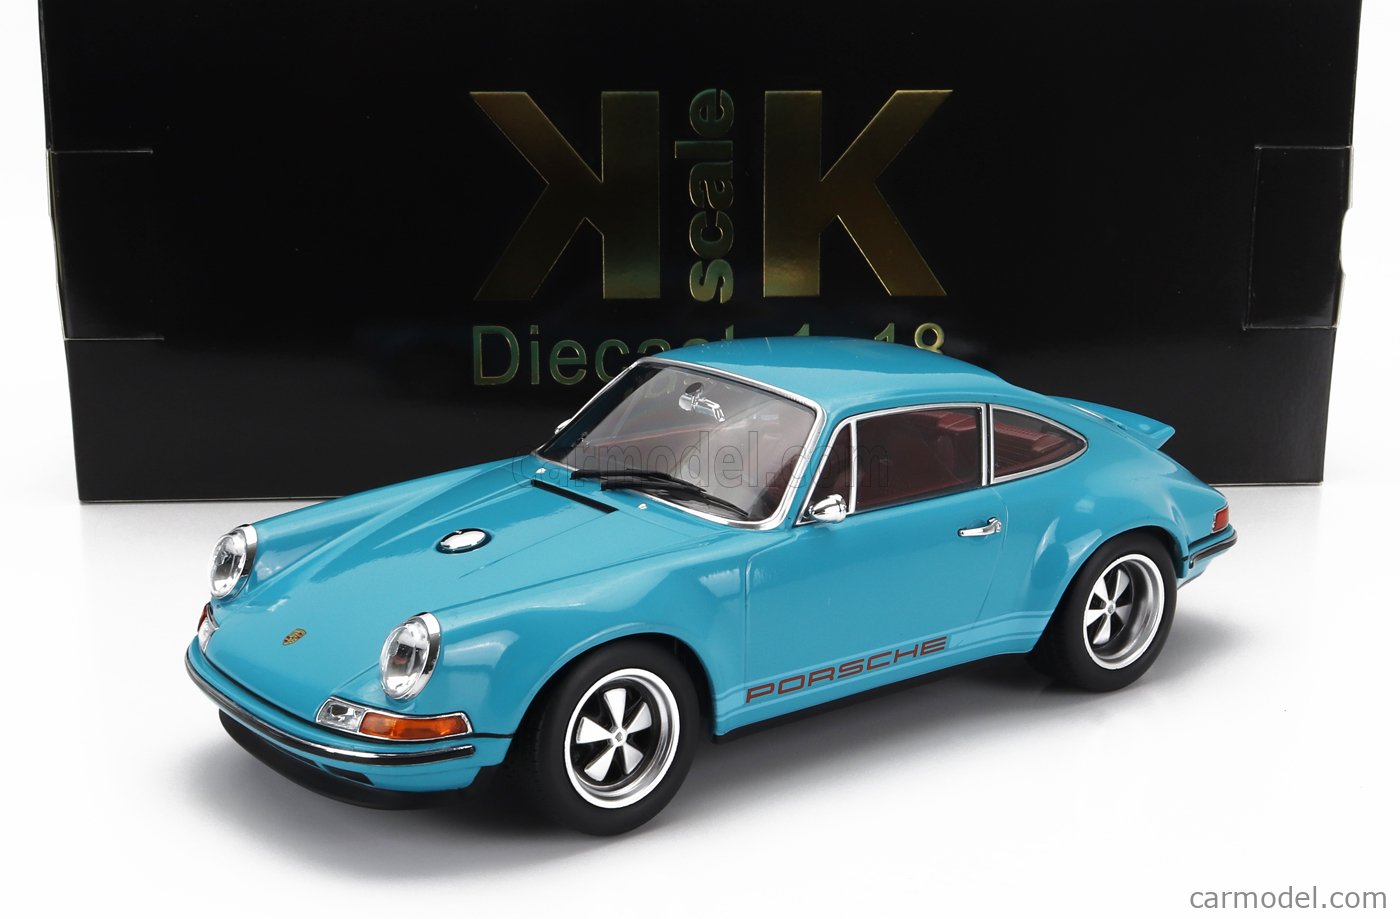 商品は綺麗な状態ですKK scale 1/18 Porsche Singer 911 Coupe